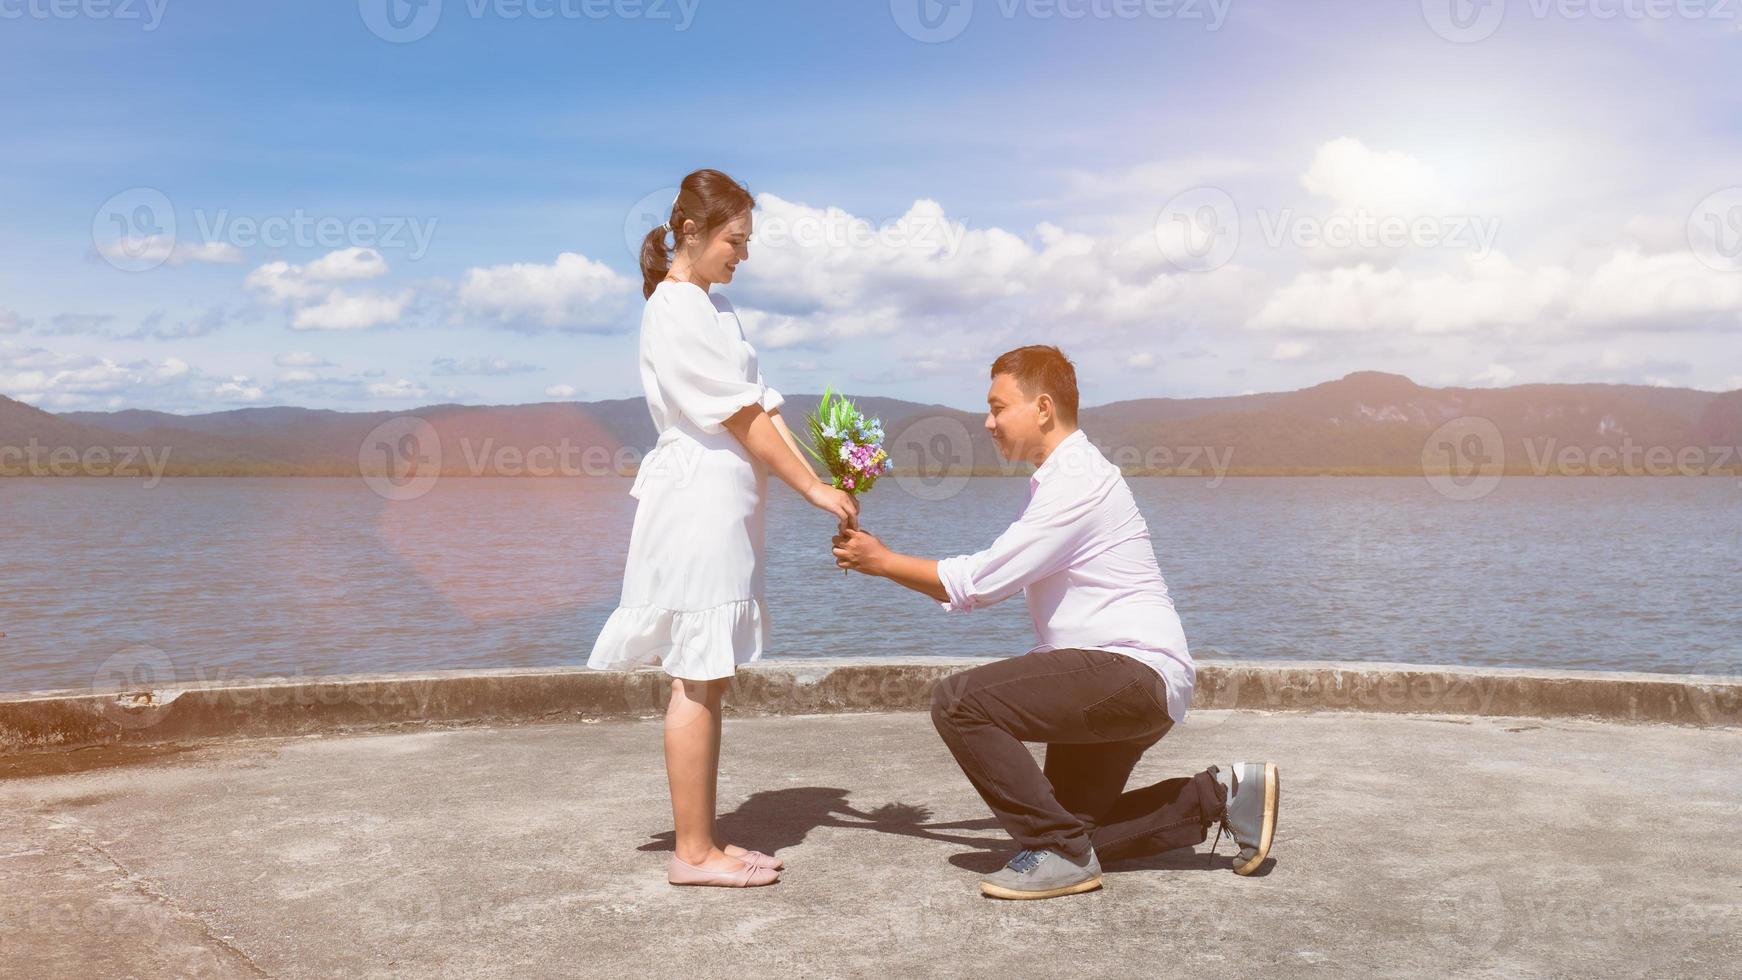 een Aziatische man knielde neer om een boeket bloemen te geven aan een Aziatische vrouw in het wit gekleed in de zeehaven. om liefde uit te drukken en voor te stellen in de zon, heldere luchten, sterke wind. foto